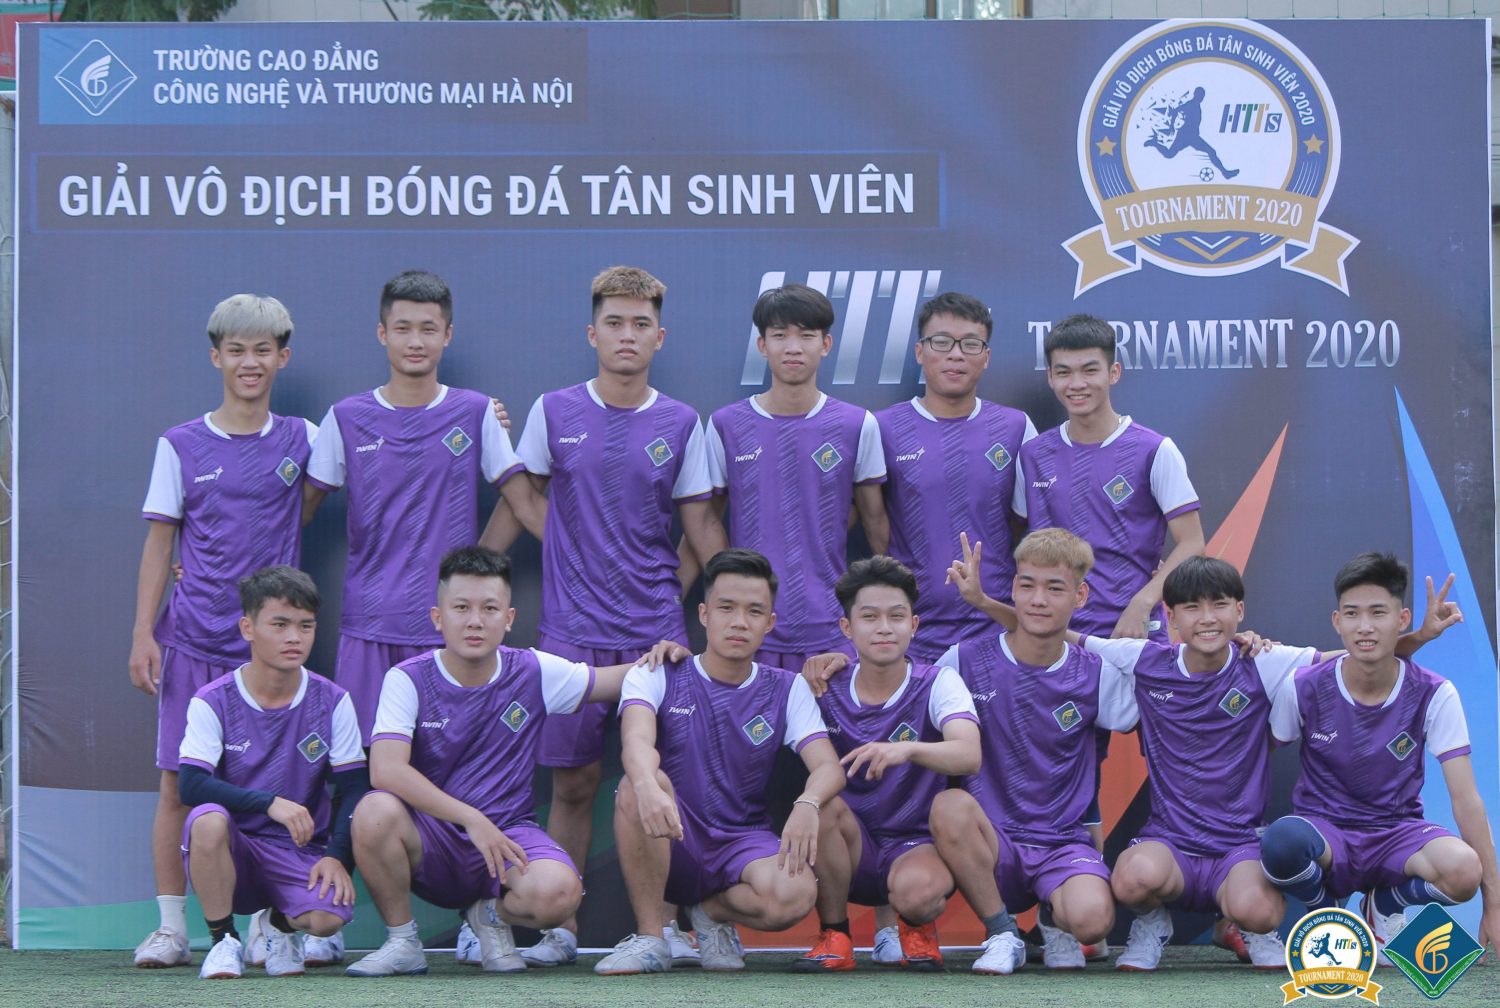 Giải vô địch bóng đá Tân sinh viên 2020 Trường Cao đẳng Công nghệ và Thương mại Hà Nội